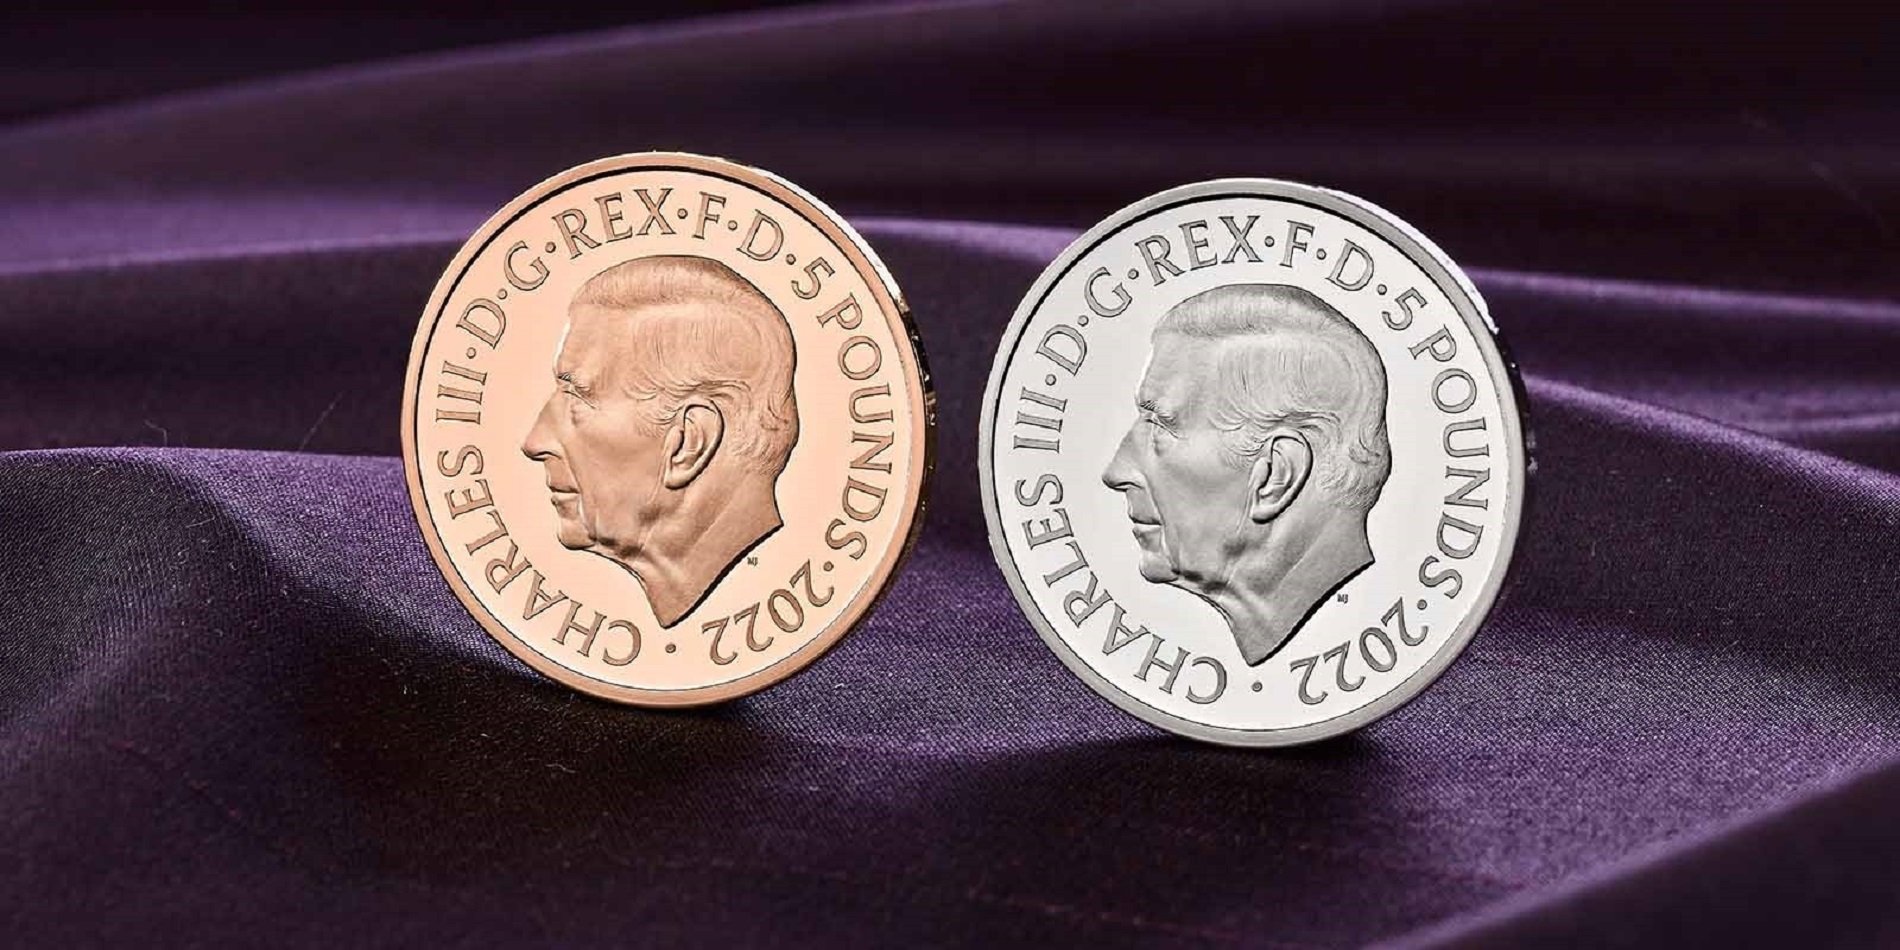 El Regne Unit revela el retrat de Carles III que apareixerà a les monedes britàniques